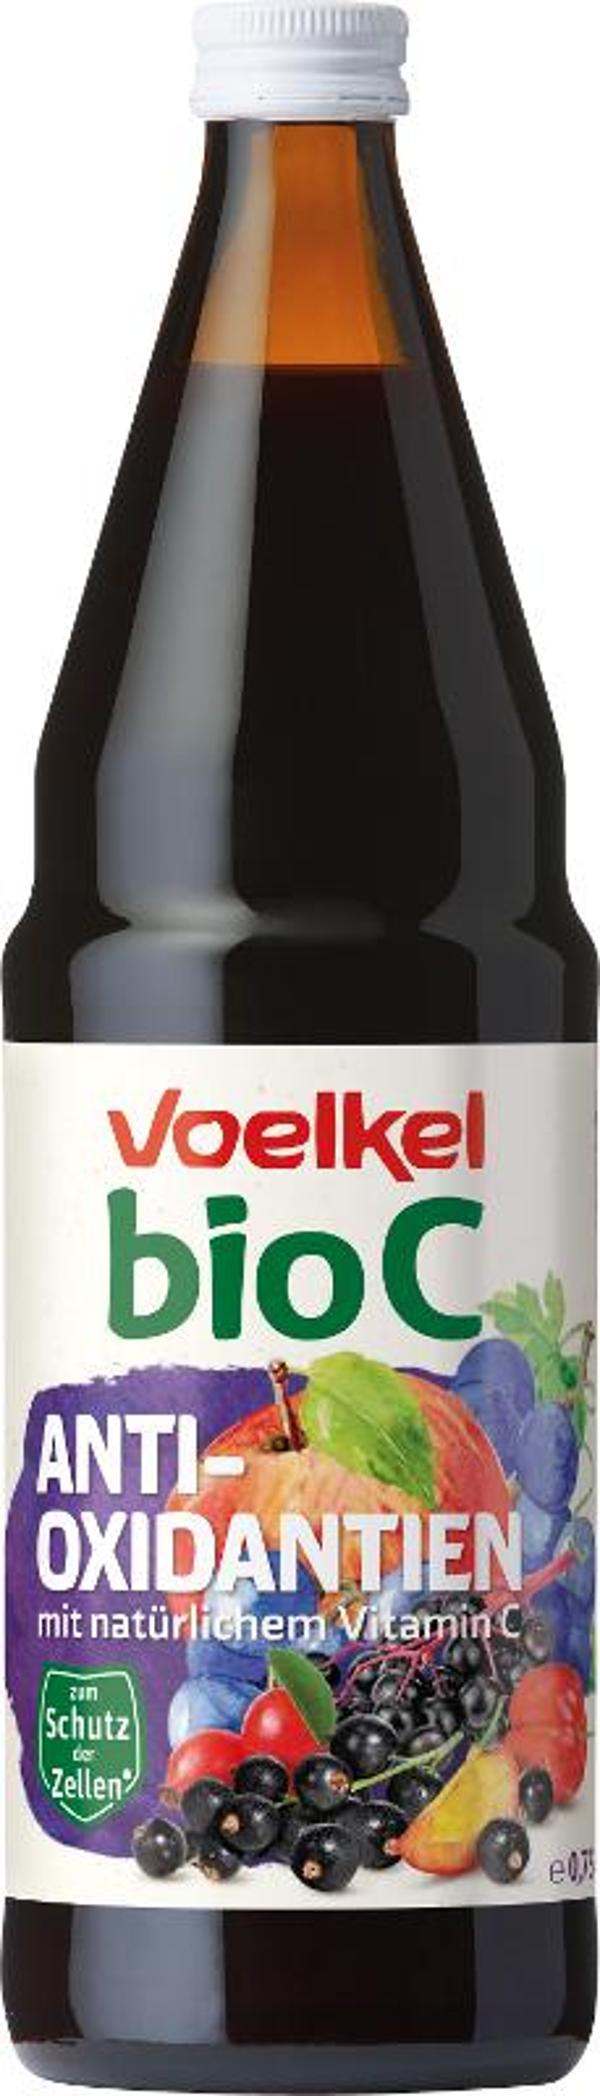 Produktfoto zu bioC Antioxidantien